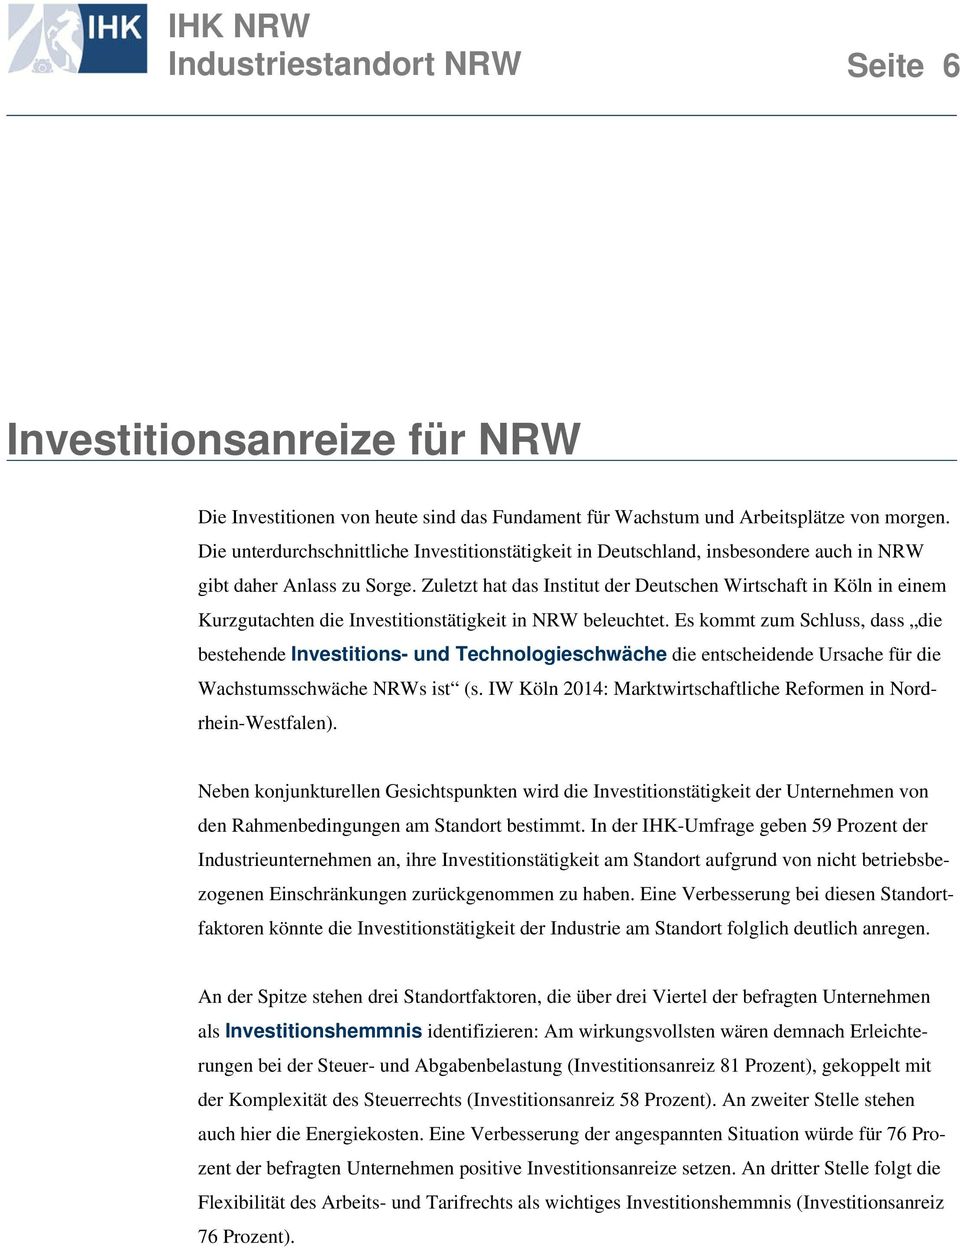 Zuletzt hat das Institut der Deutschen Wirtschaft in Köln in einem Kurzgutachten die Investitionstätigkeit in NRW beleuchtet.